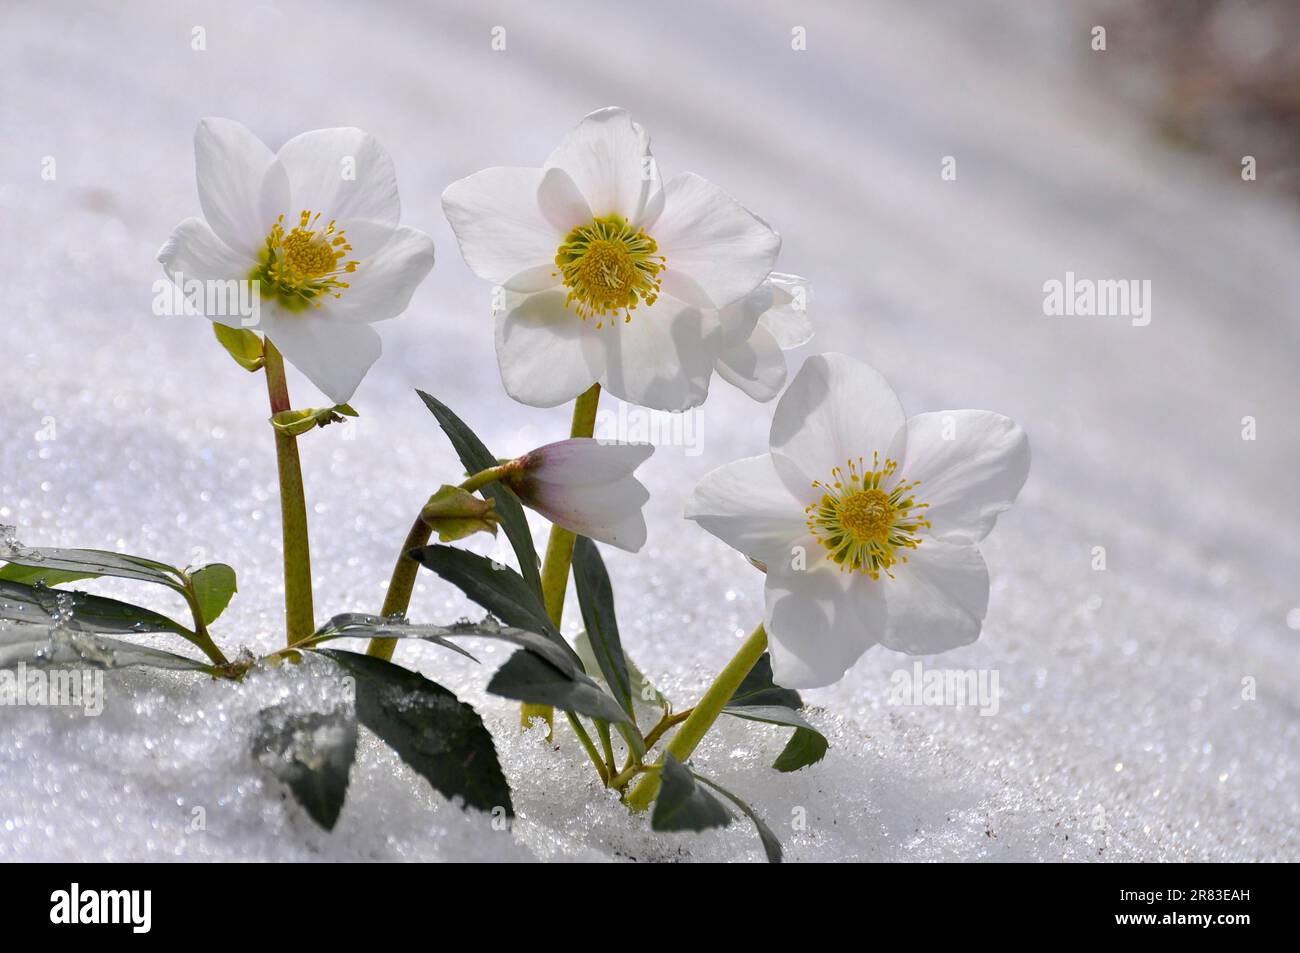 Roses de neige, Roses de Noël (Helleborus niger) dans la neige, dégeler Banque D'Images